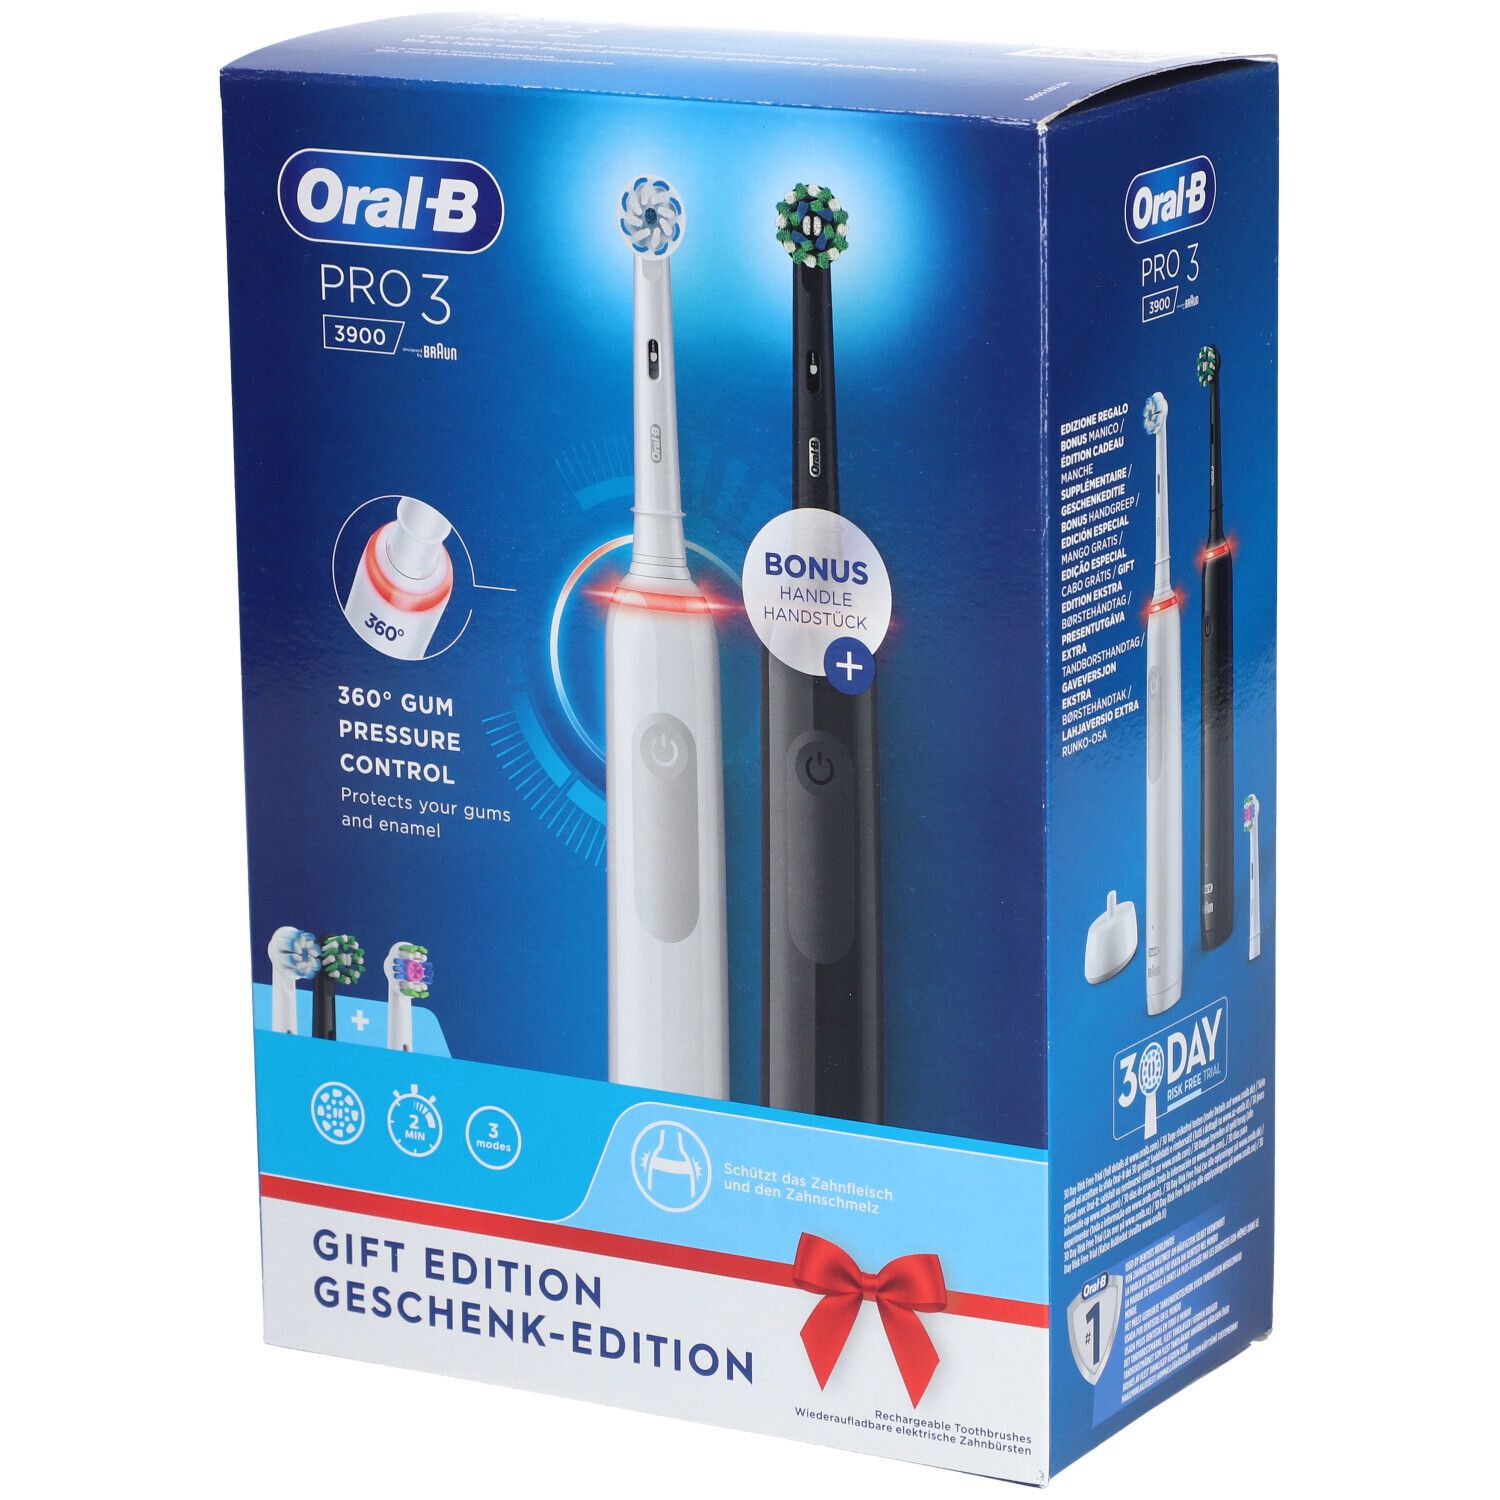 Oral-B Pro 3 3900 + 2. Handstück Elektrische Zahnbürste